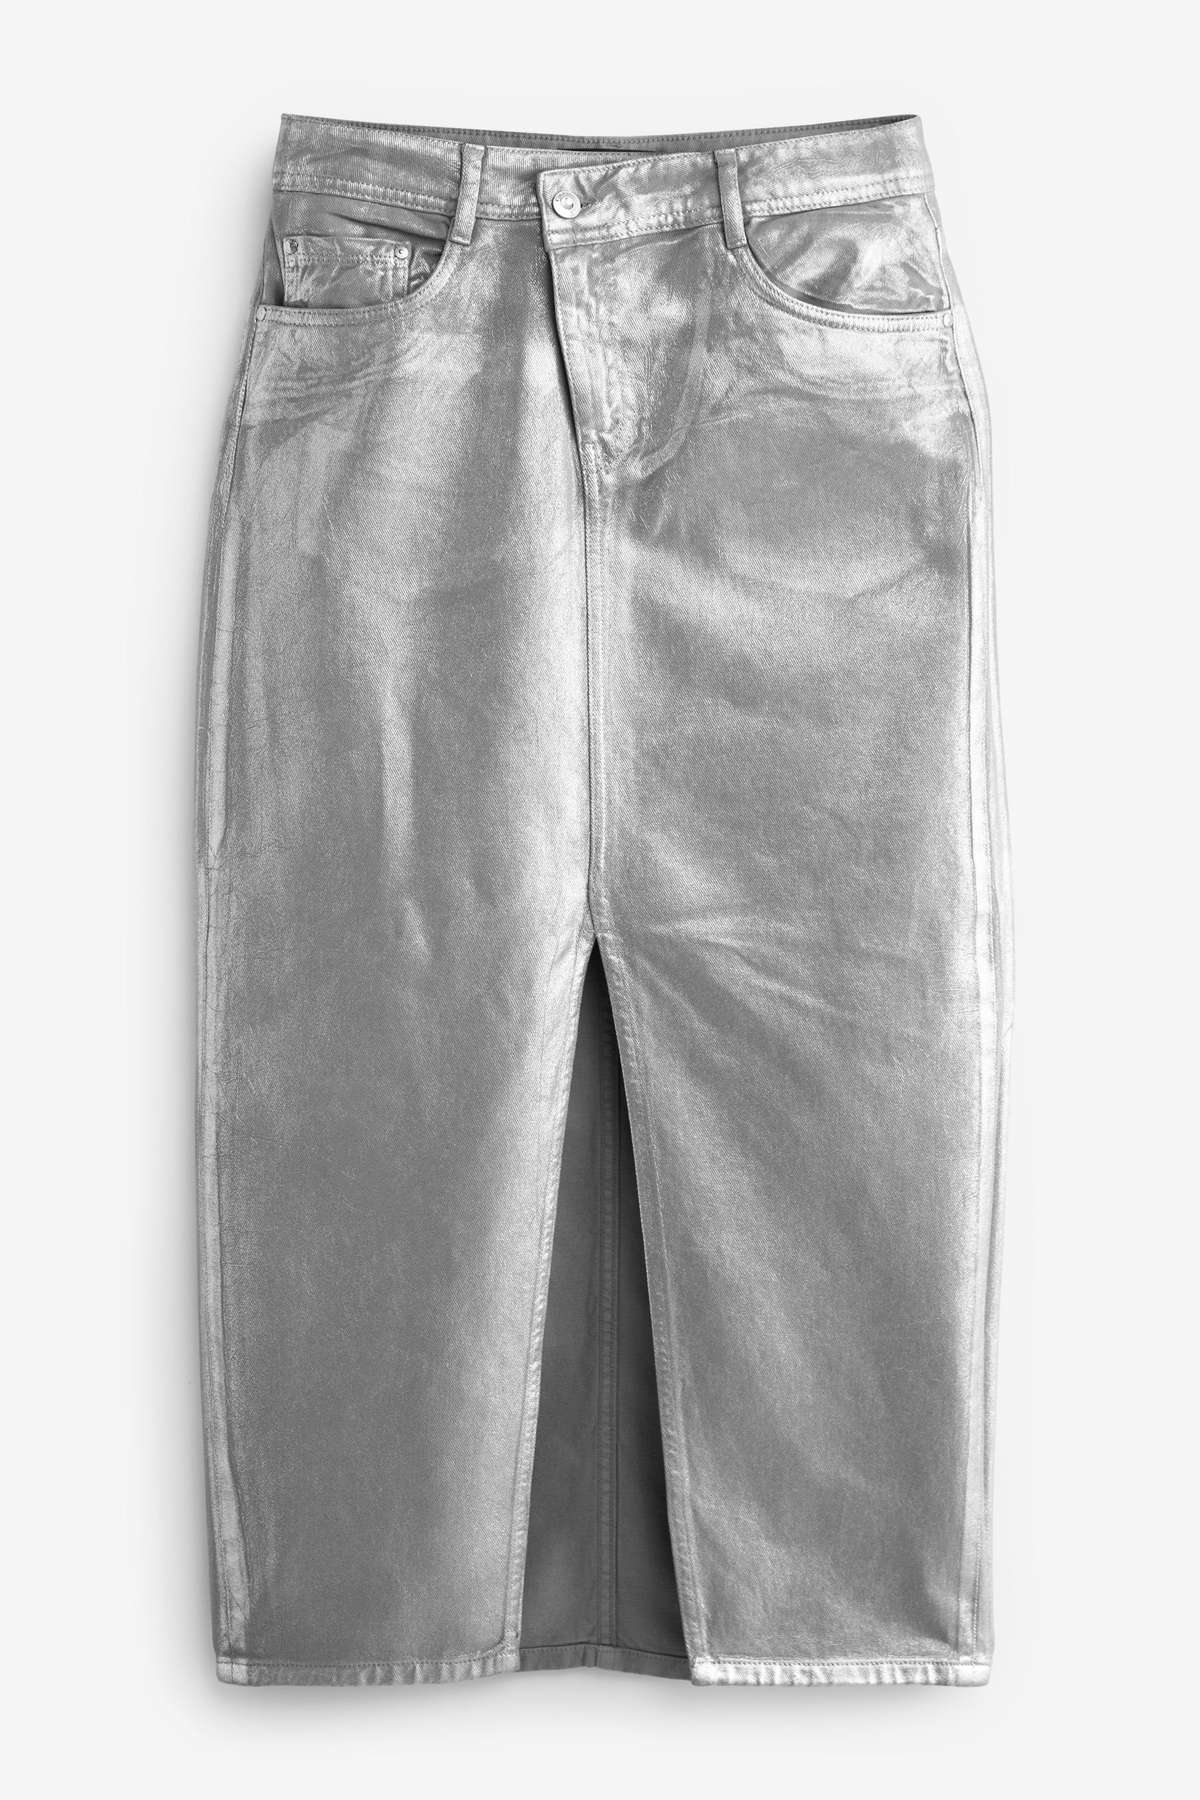 Джинсовая юбка джинсовая юбка-миди металлик с асимметричной талией (1 шт.)